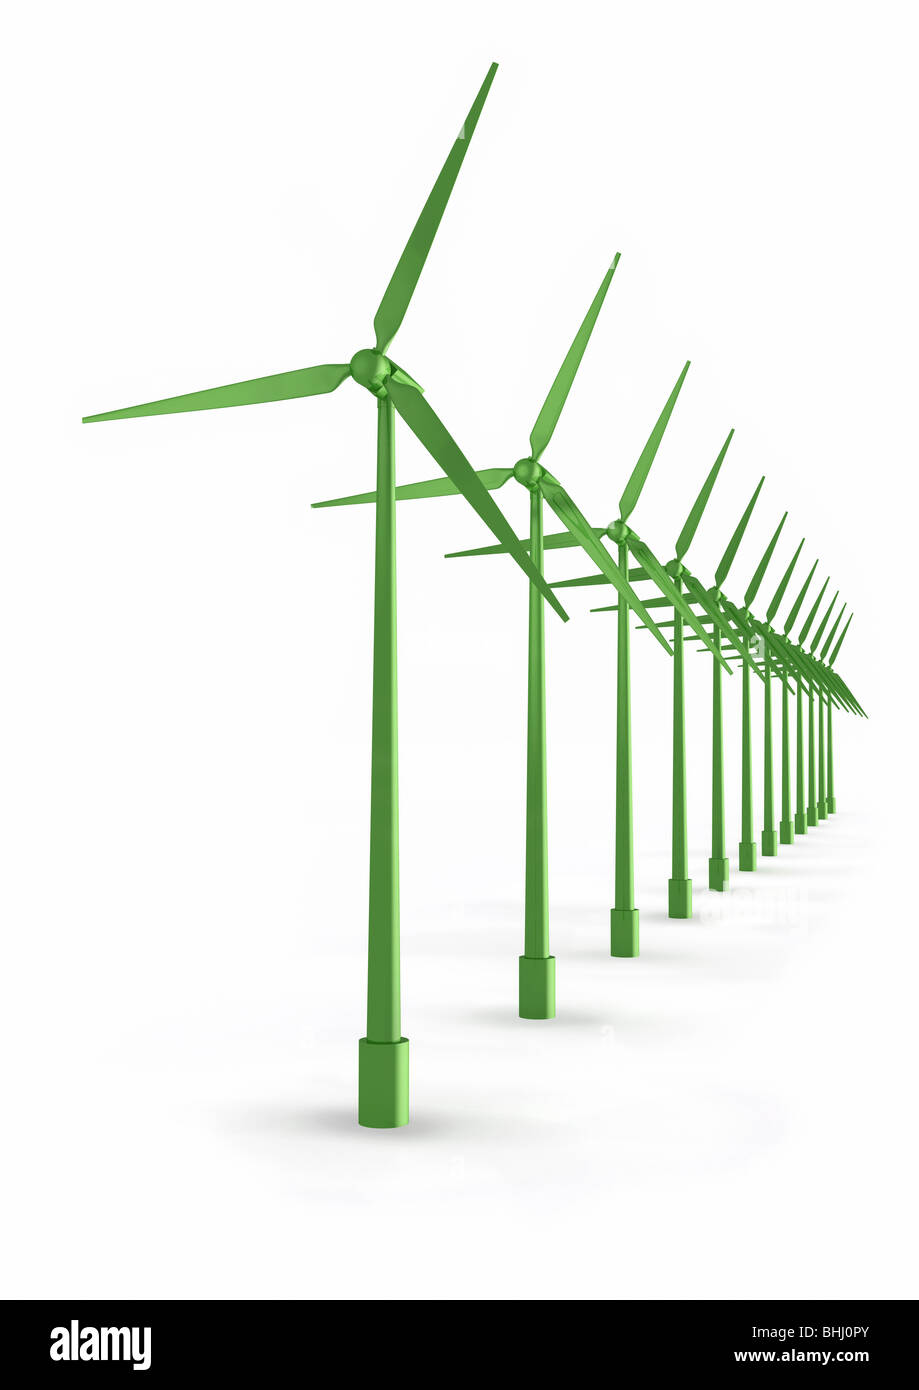 Les moulins à vent sur fond blanc - Windkraftanlagen auf weiss Banque D'Images